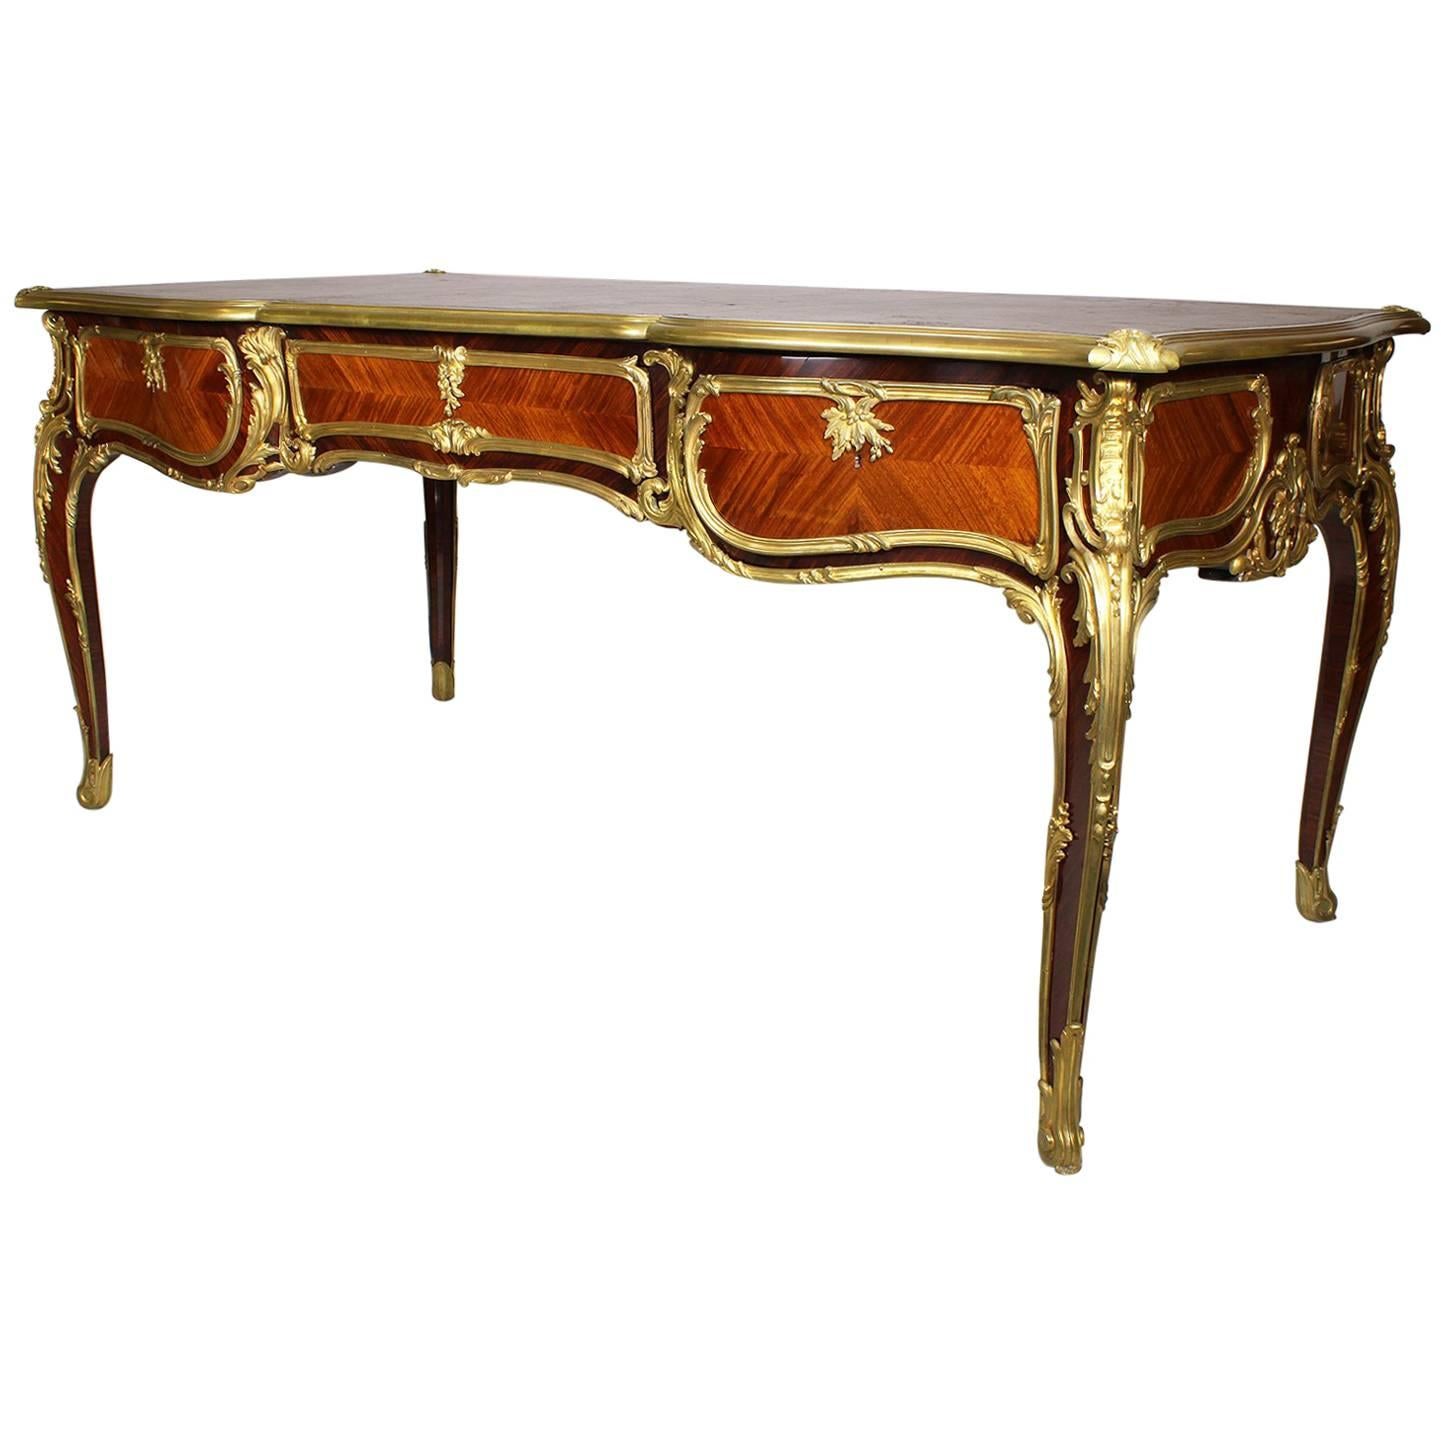 Bureau plaqué en kingwood revêtu de bronze doré de style Louis XV du 19ème siècle